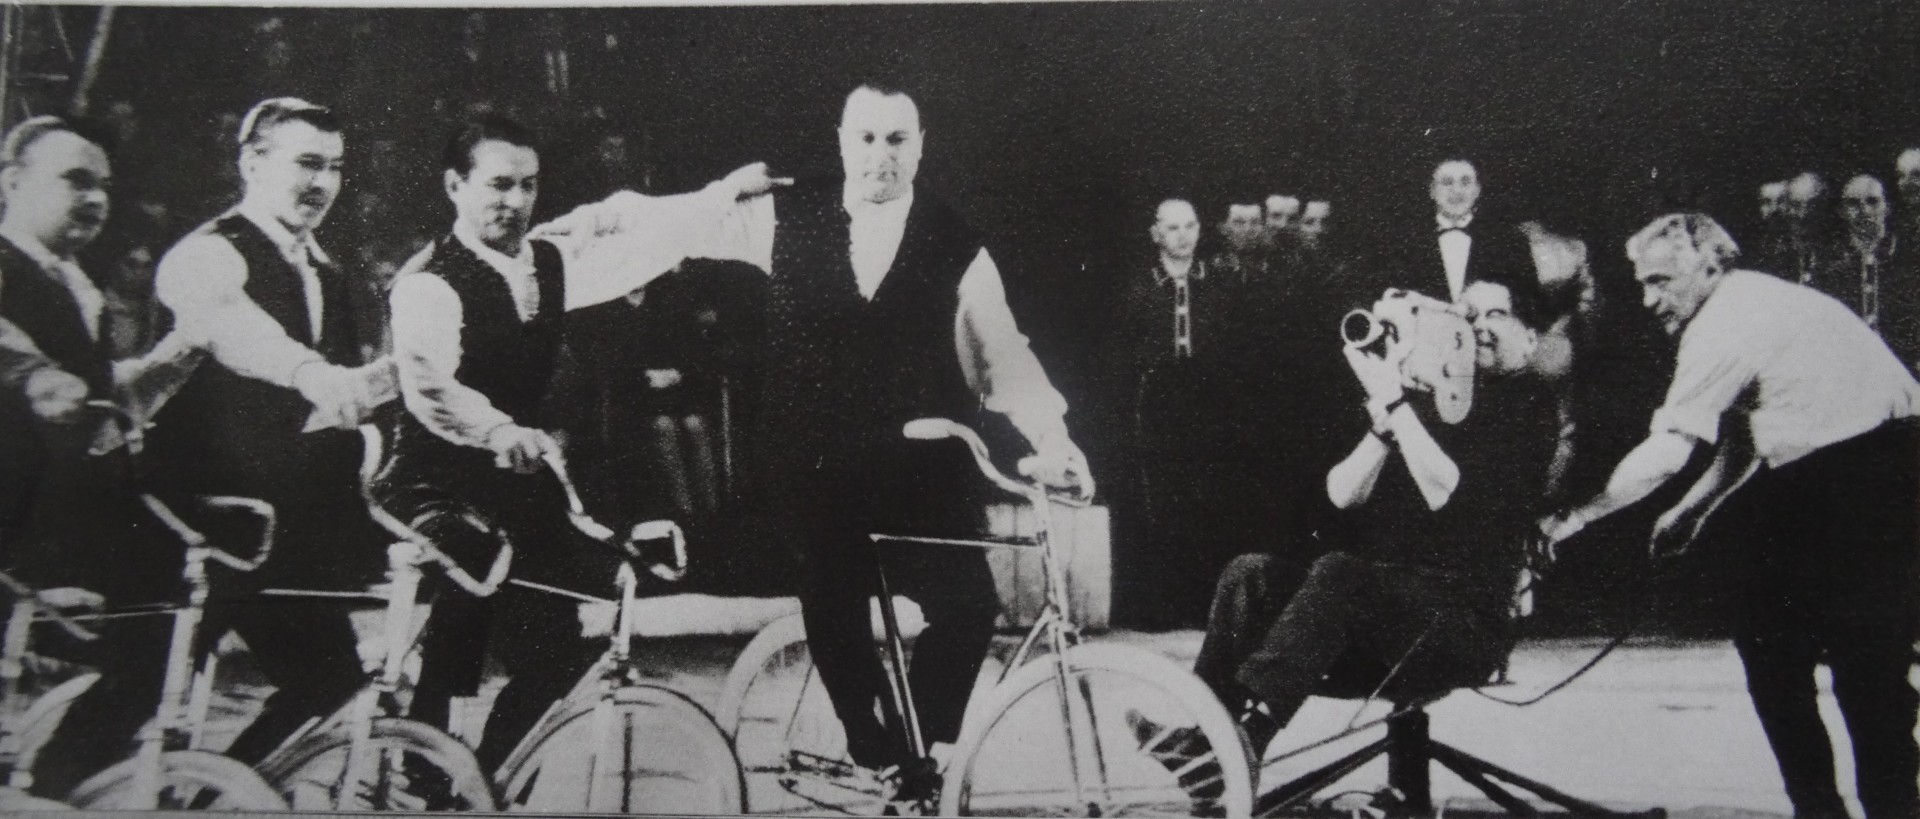 Выступление артистов цирка снимает Виктор Усанов, ему ассистирует режиссер Илья Гутман (на фото справа). Фото из частного архива.